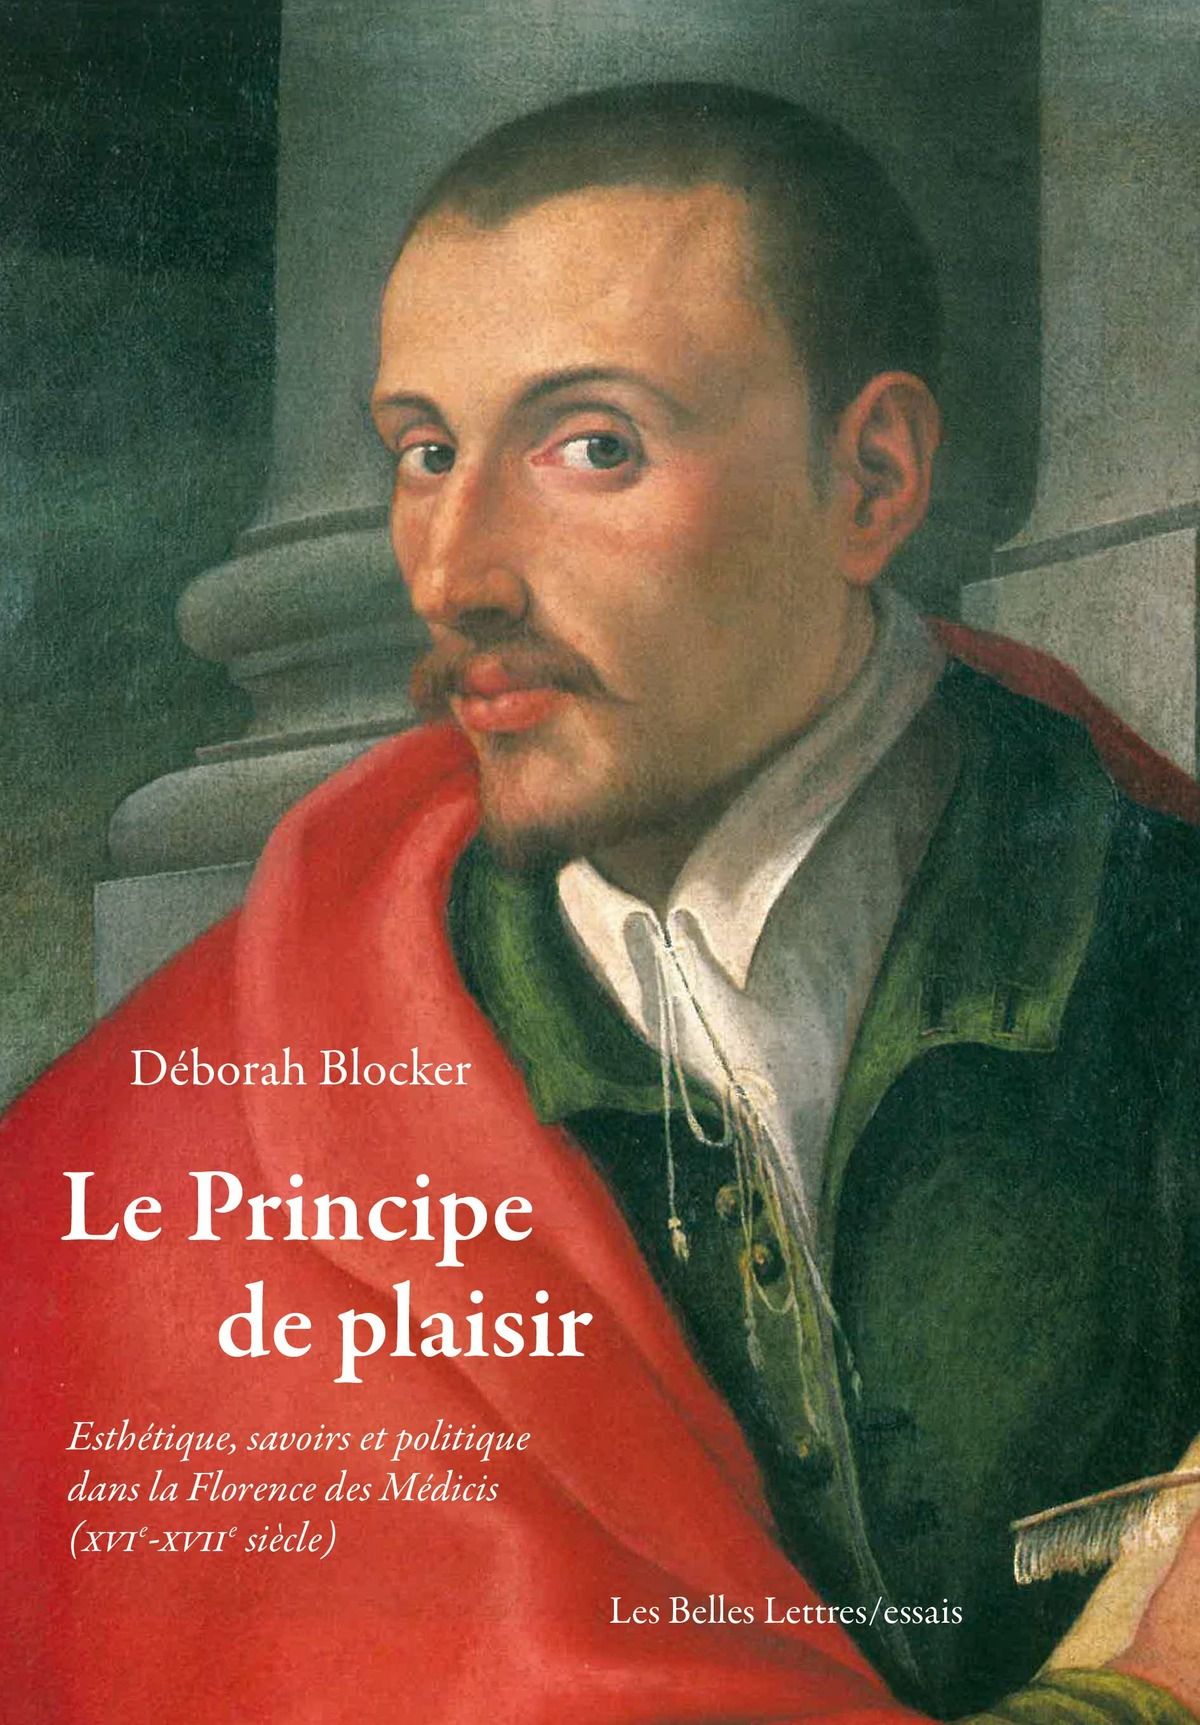 D. Blocker, Le principe de plaisir